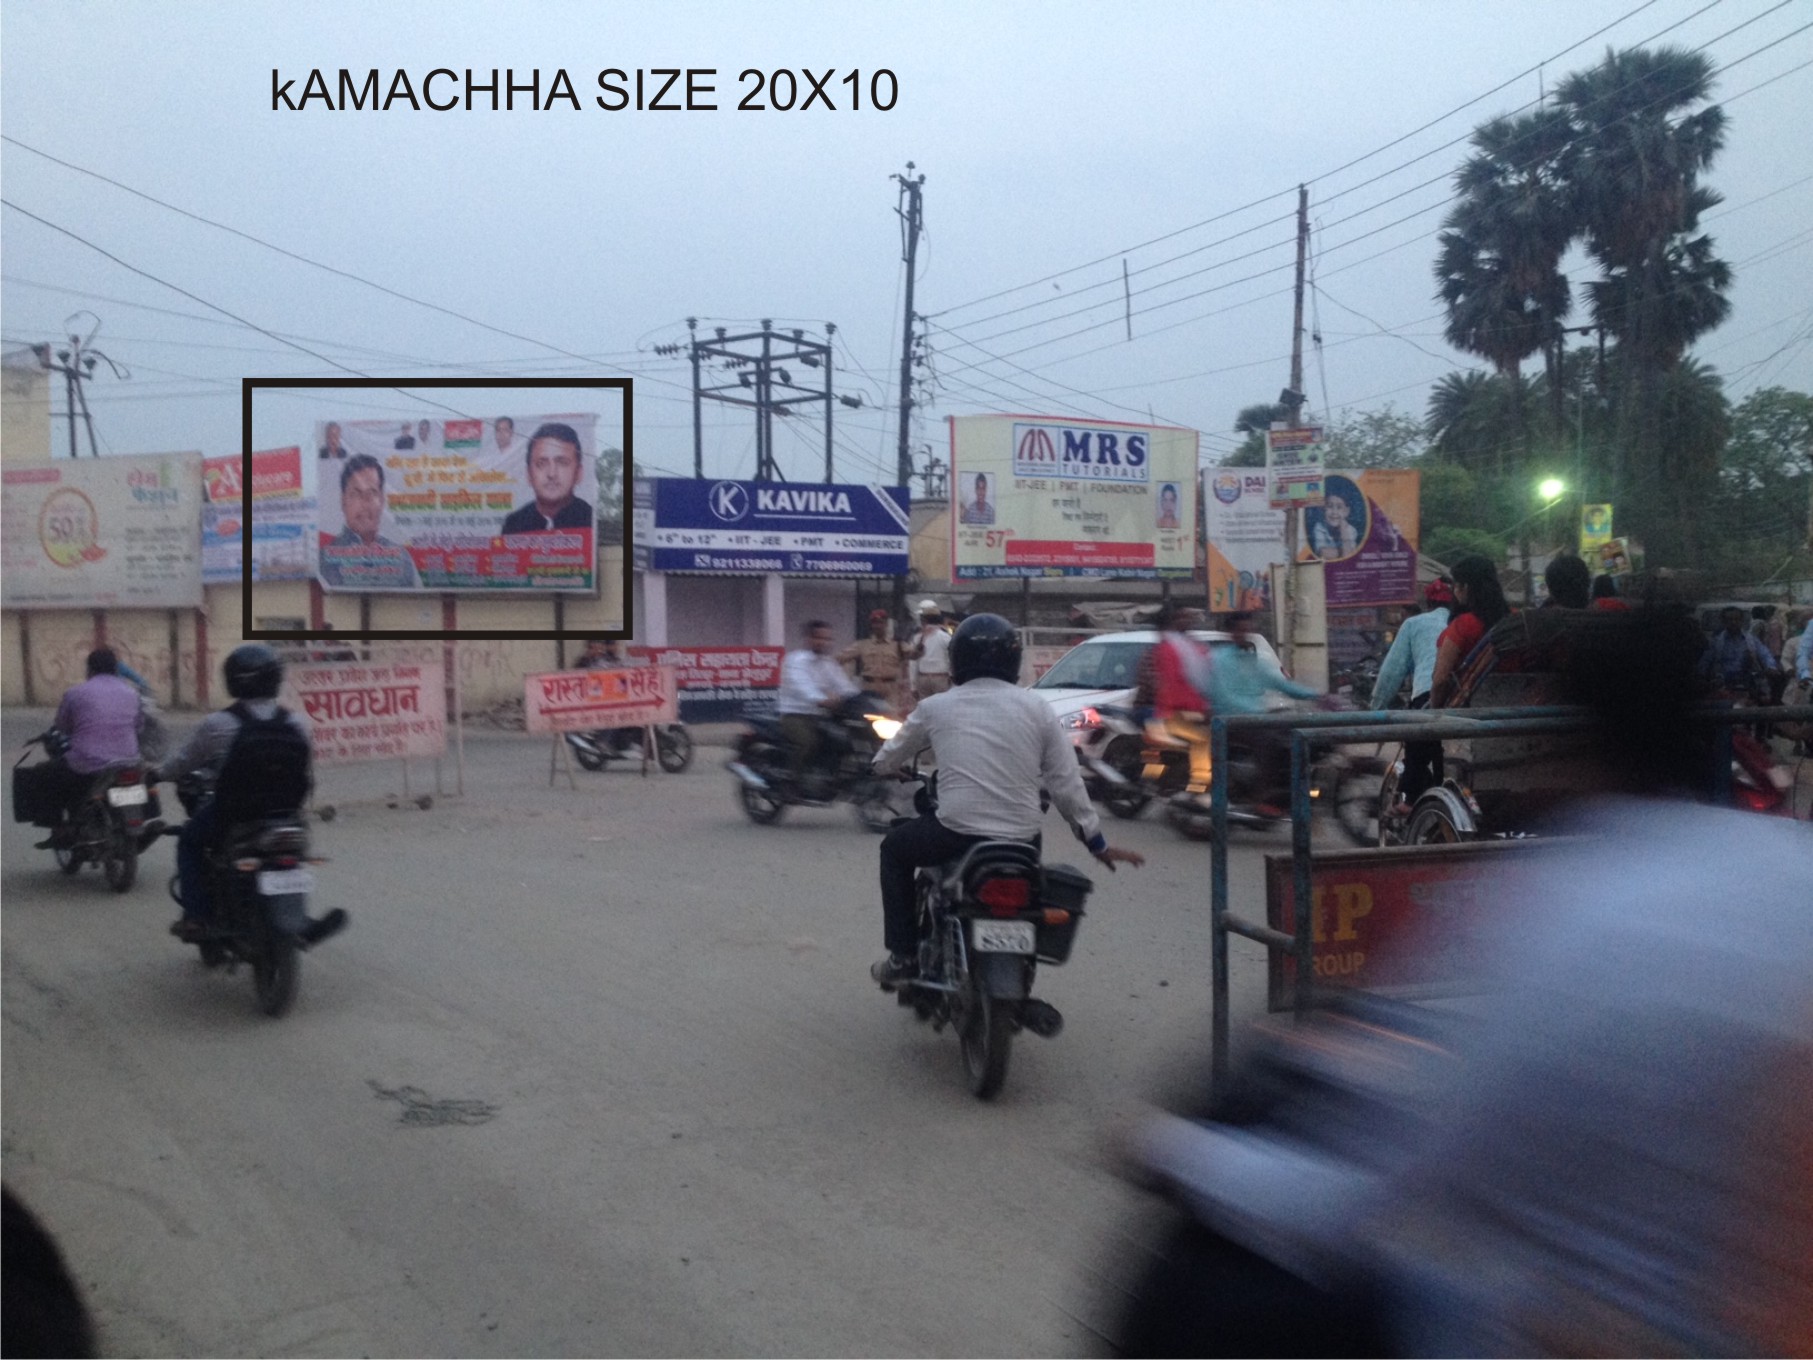  KAMACHHA, Varanasi       